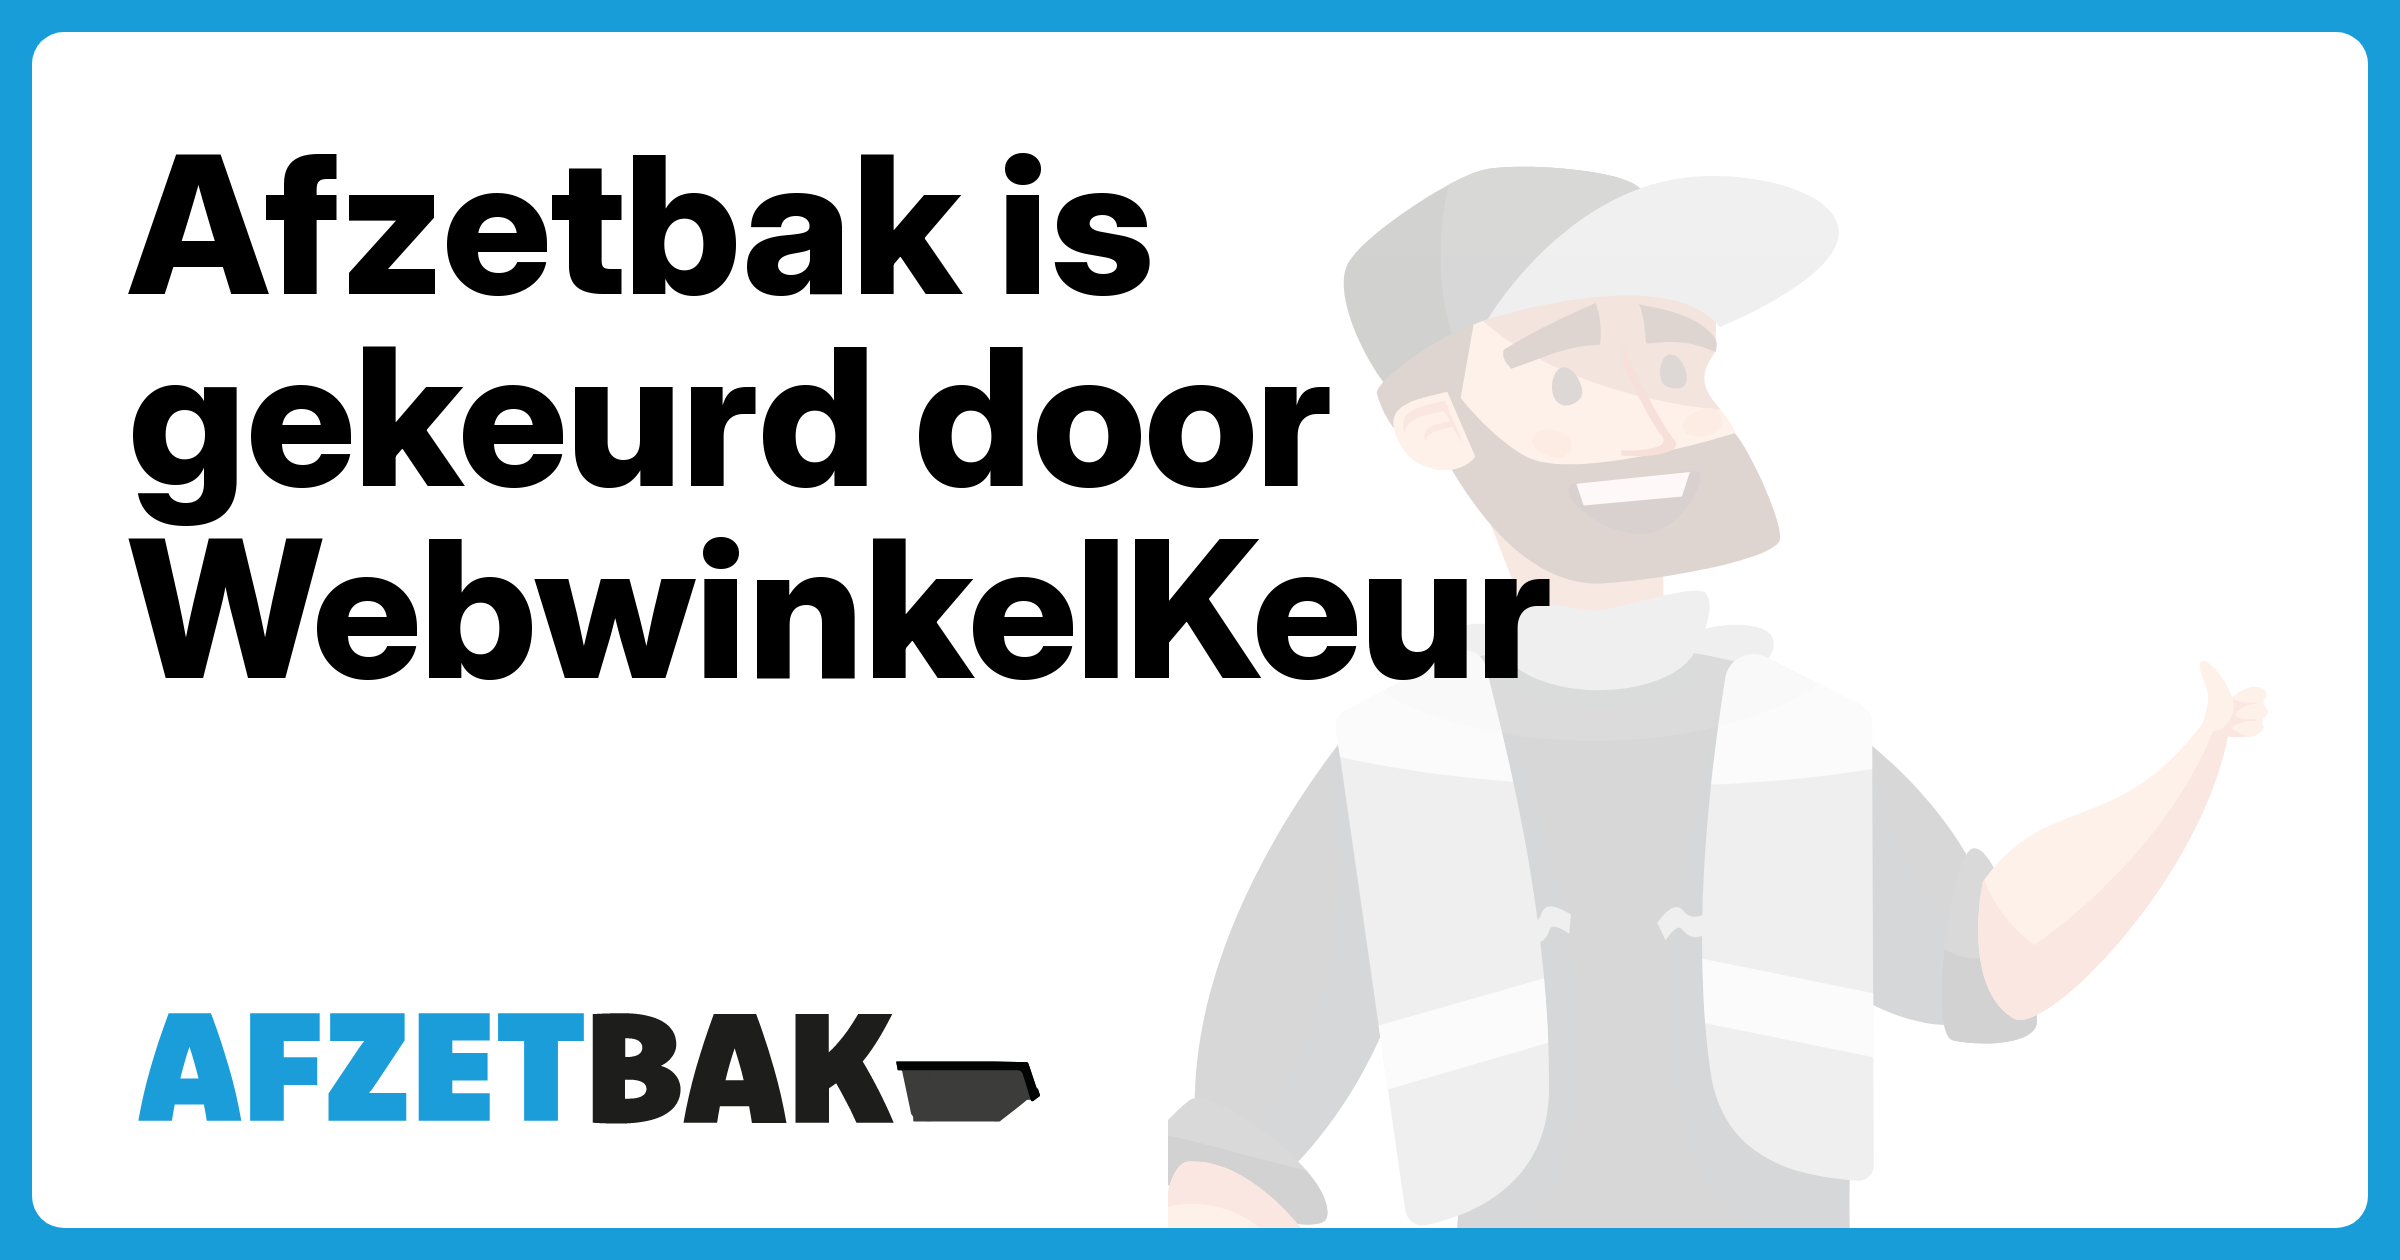 Afzetbak is gekeurd door WebwinkelKeur - Afzetbak.nl